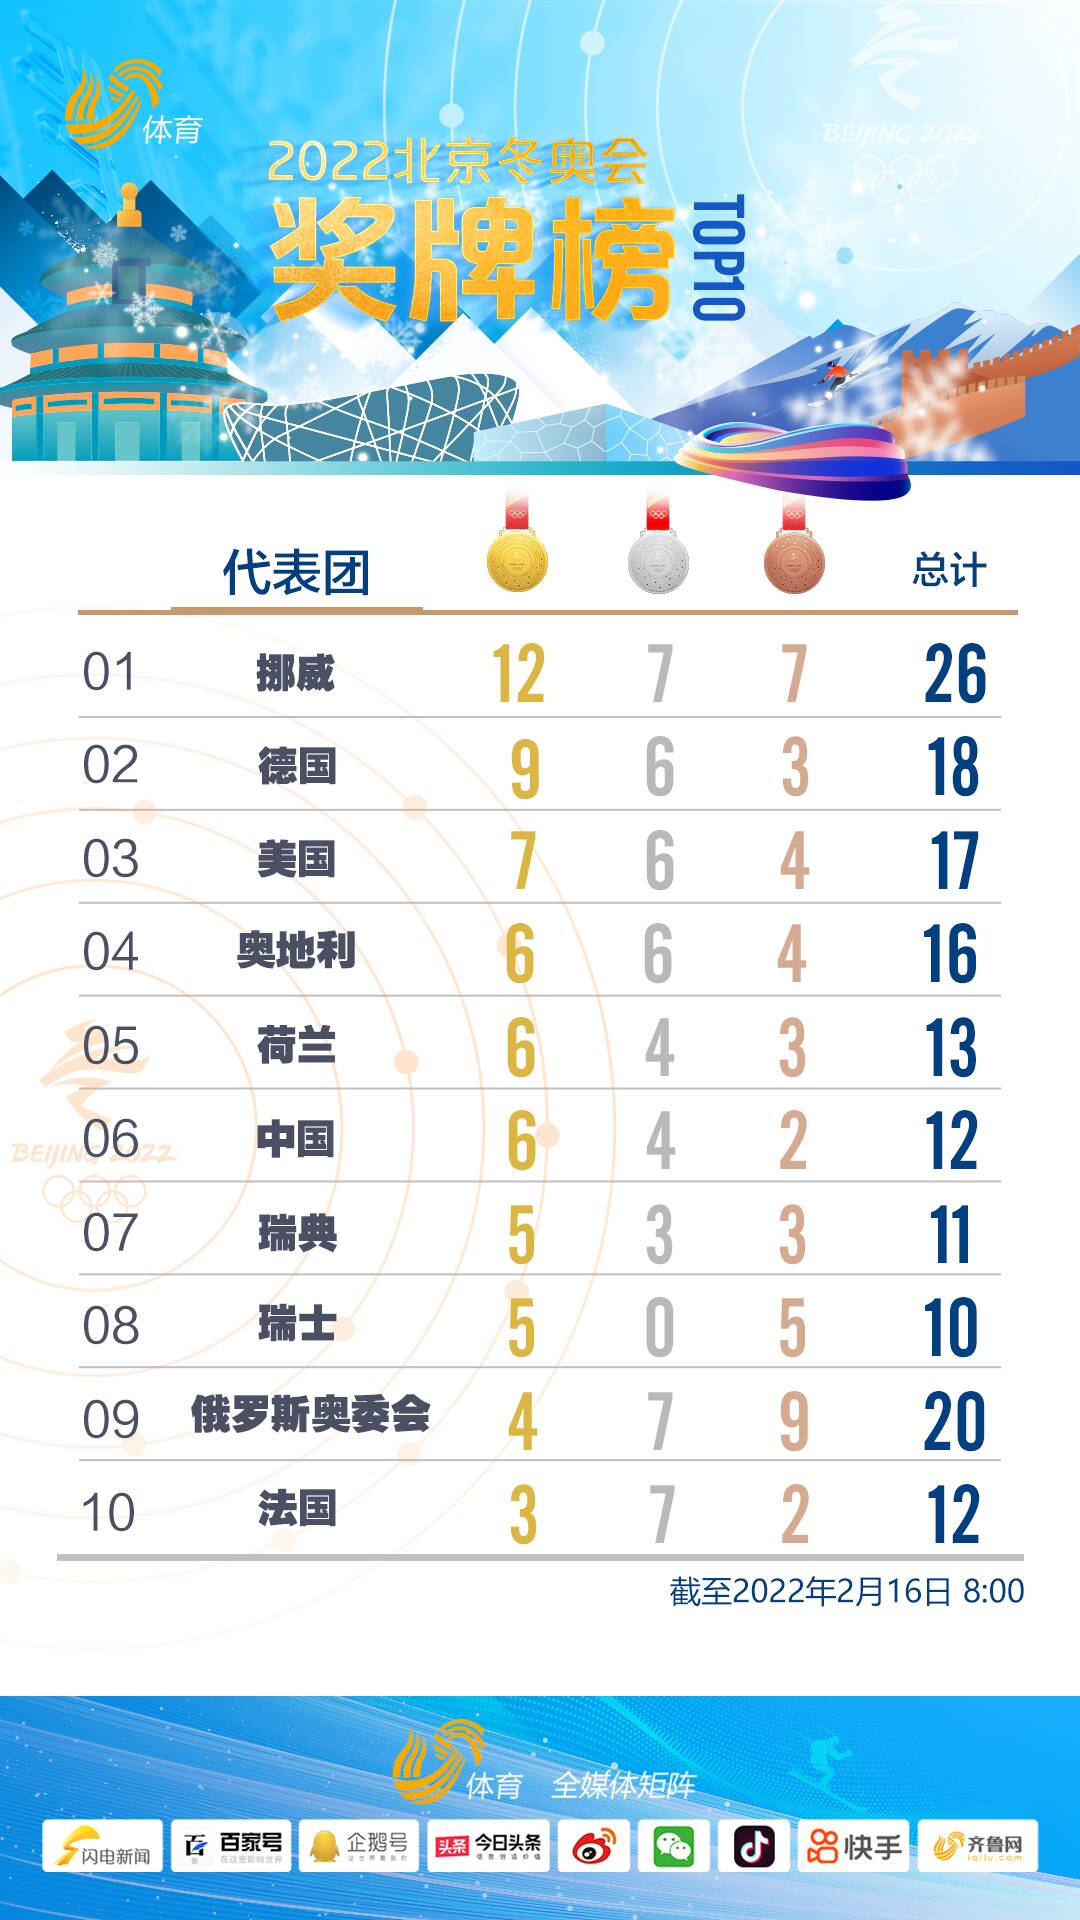 北京冬奥会奖牌榜中国6金4银2铜暂列第六